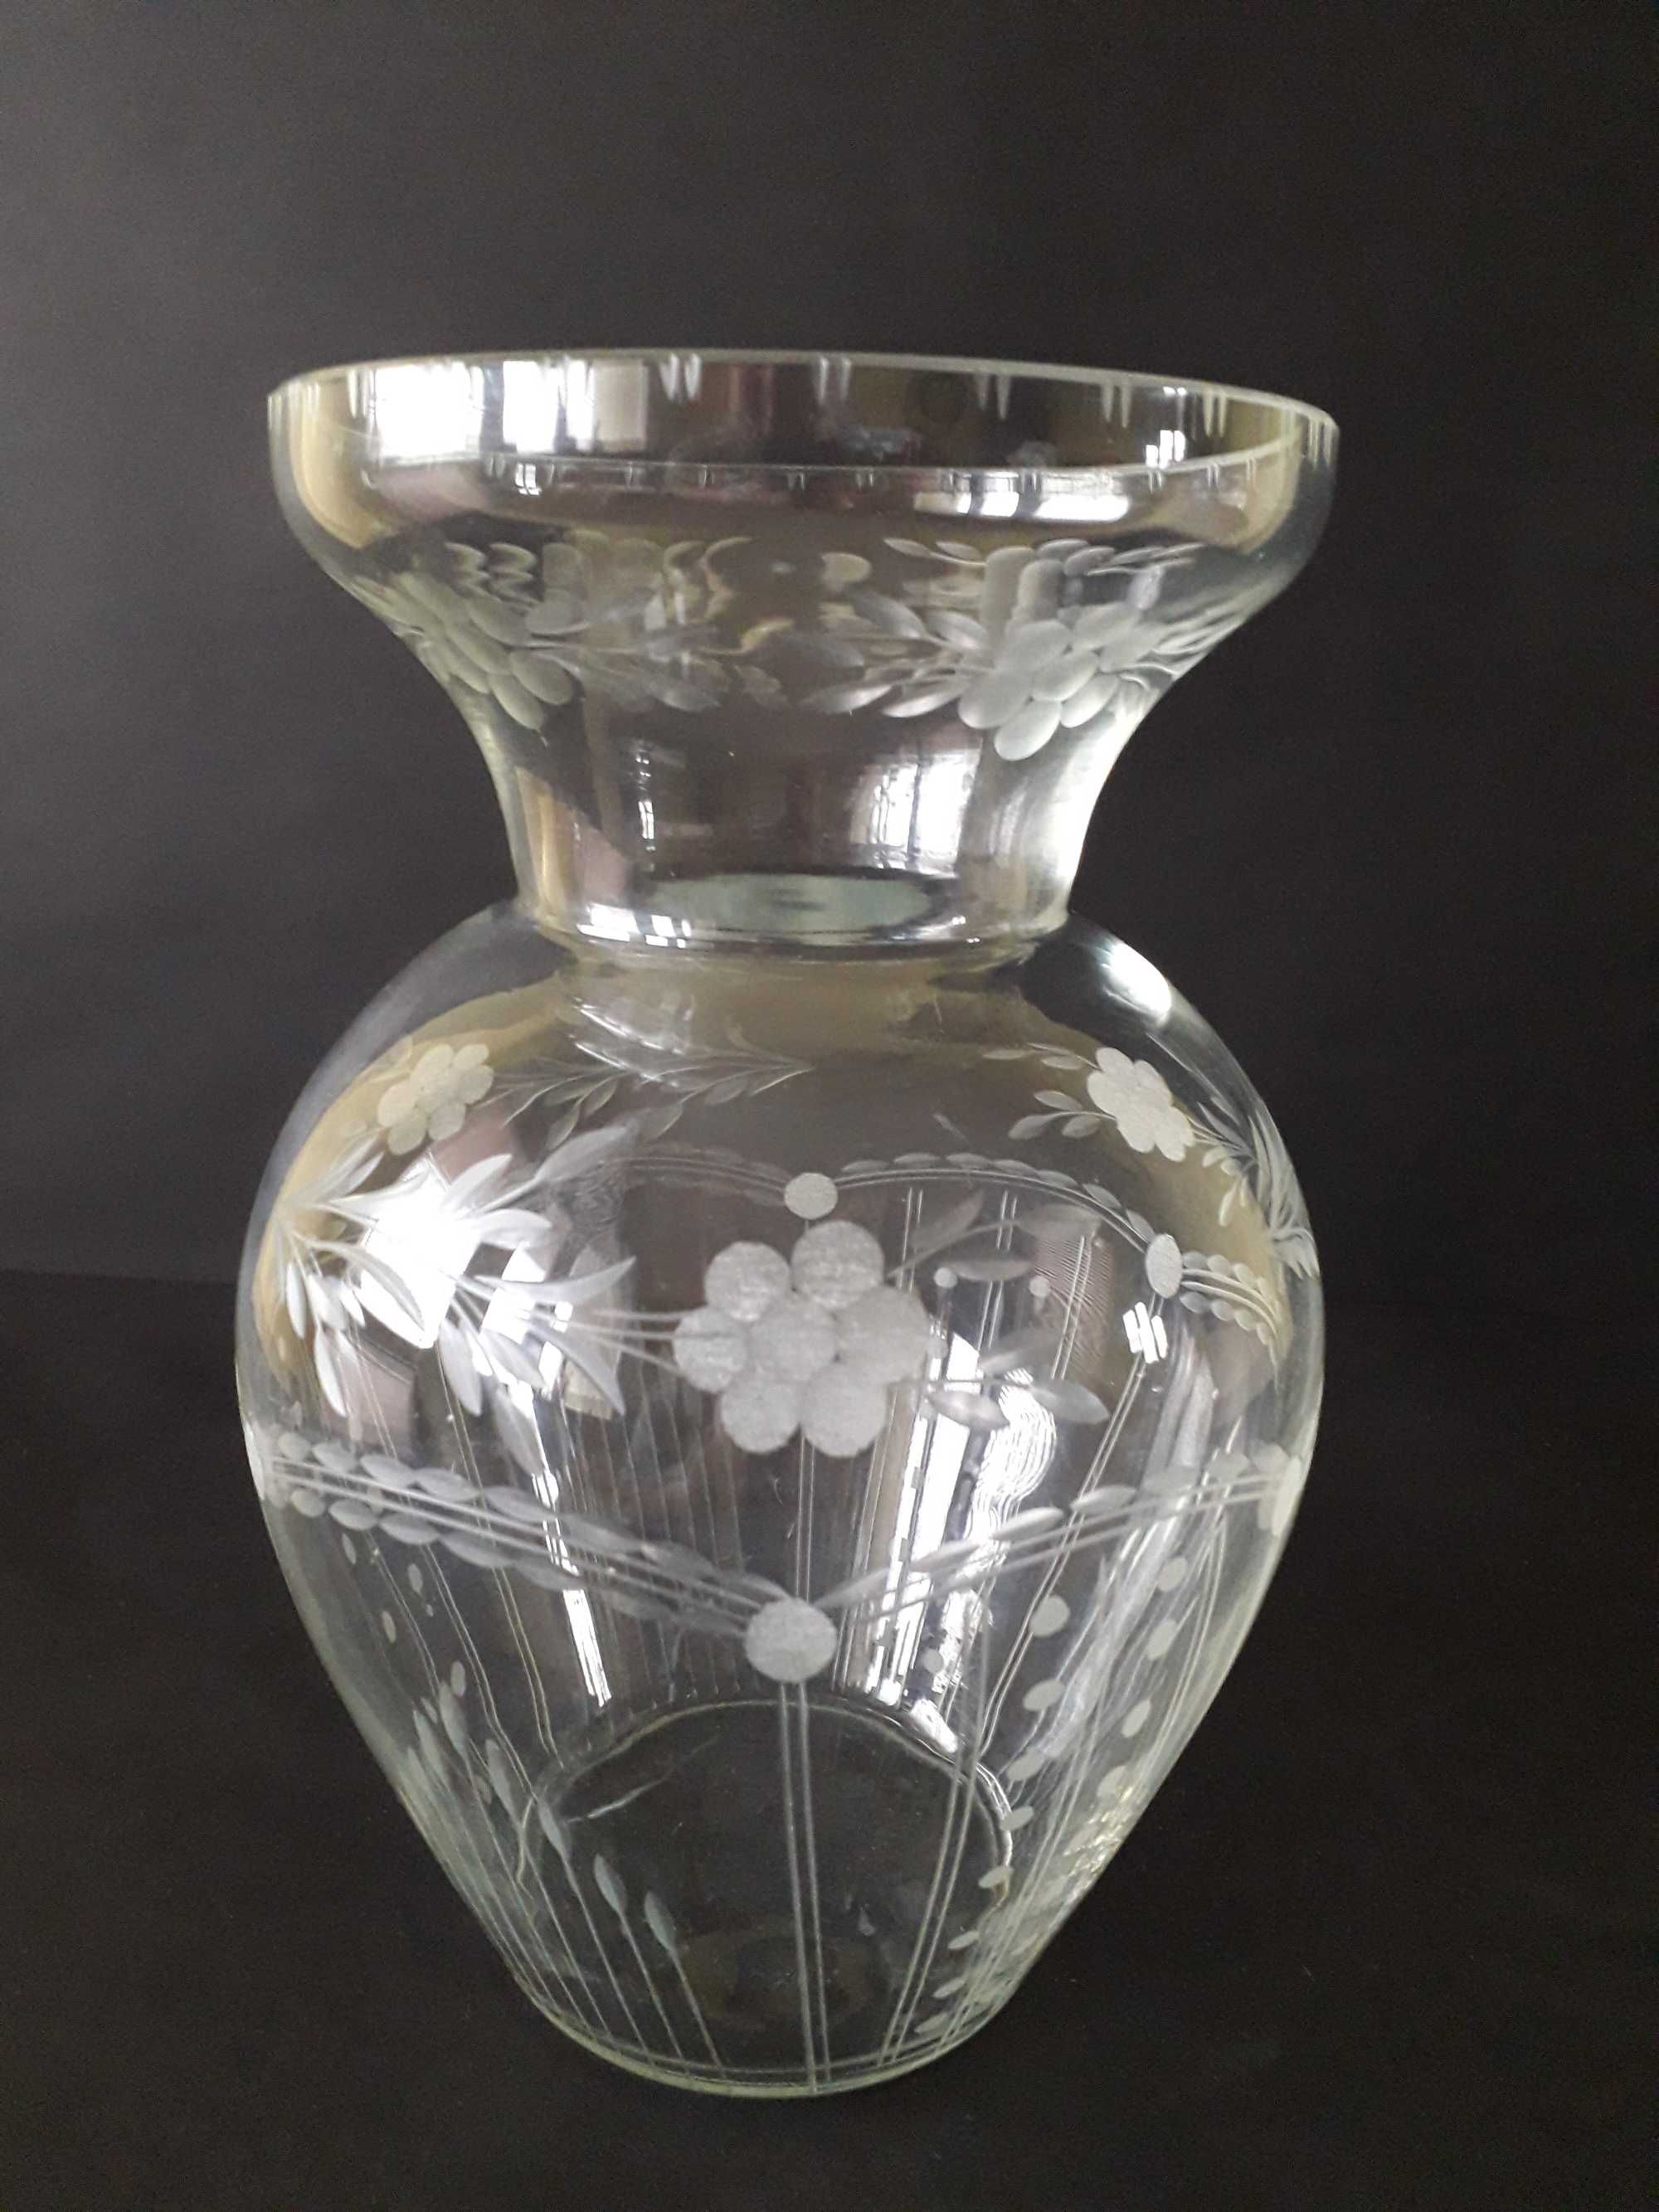 Szkło stare piękny duży ręcznie szlifowany wazon kolekcjonerski.